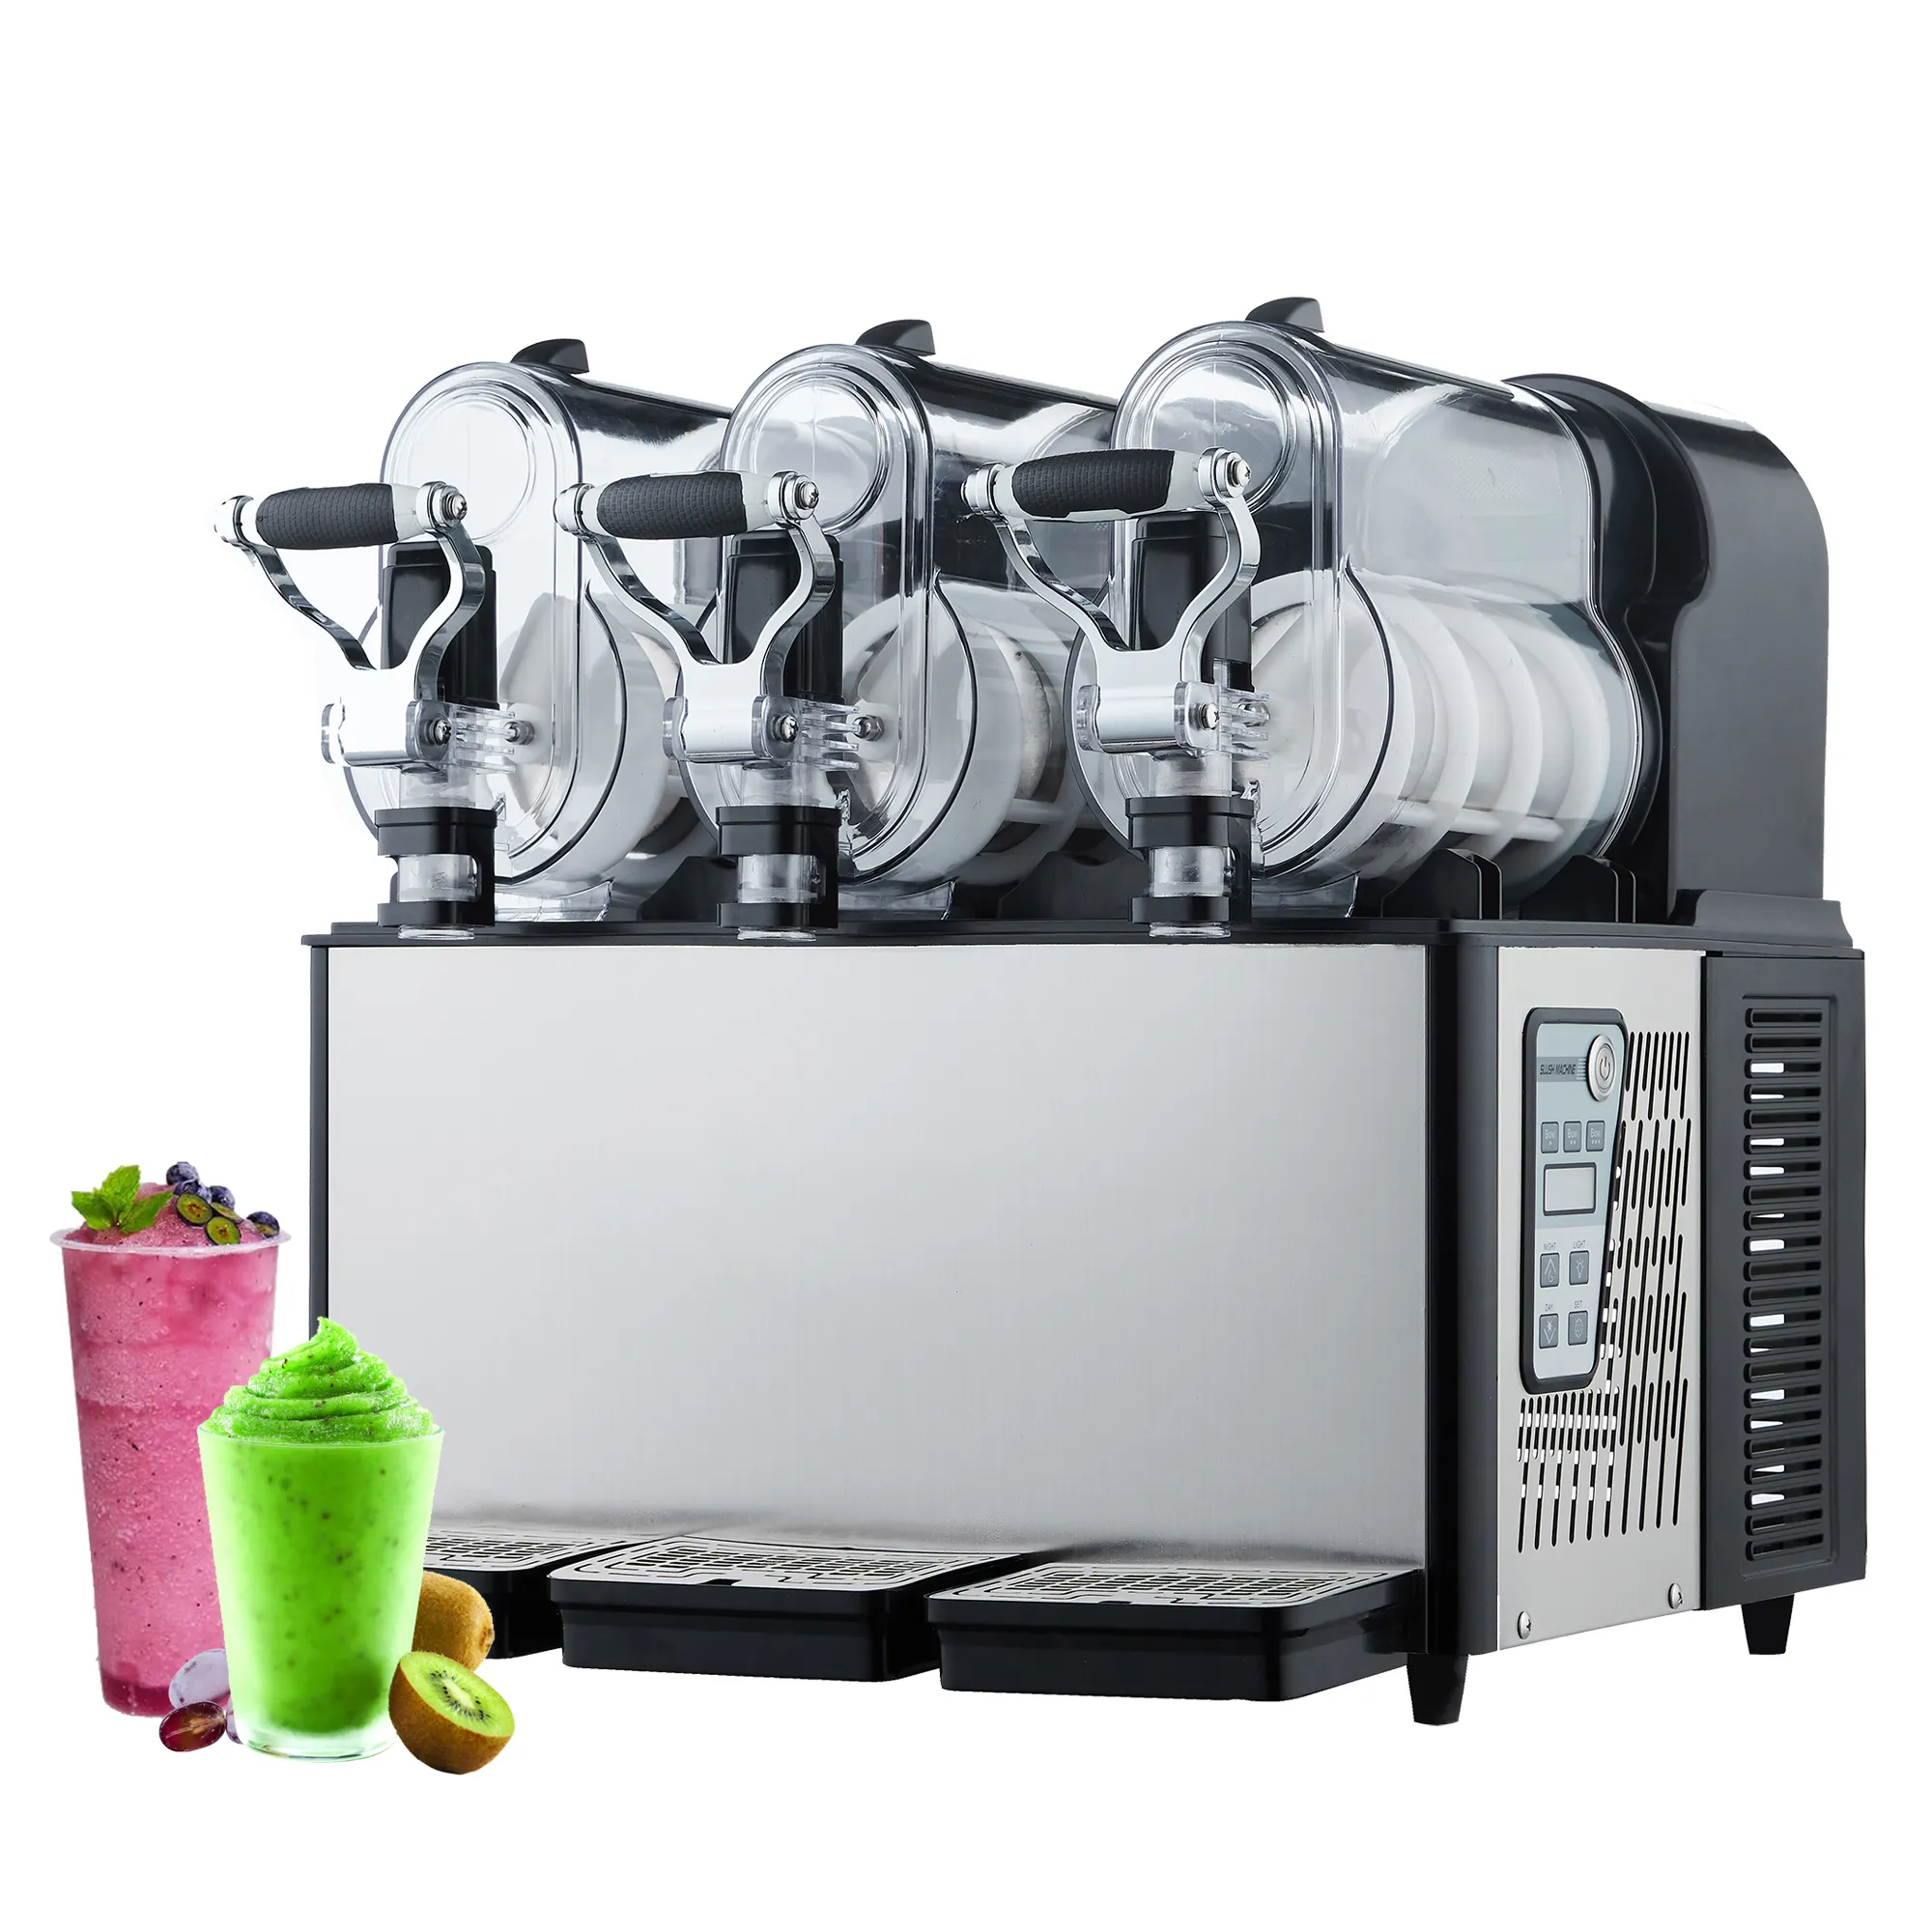 Profesyonel fabrika doğrudan satış 3-9L ticari meyve suyu içecek makinesi smoothie makinesi slush makinesi dondurulmuş içecekler için ev için